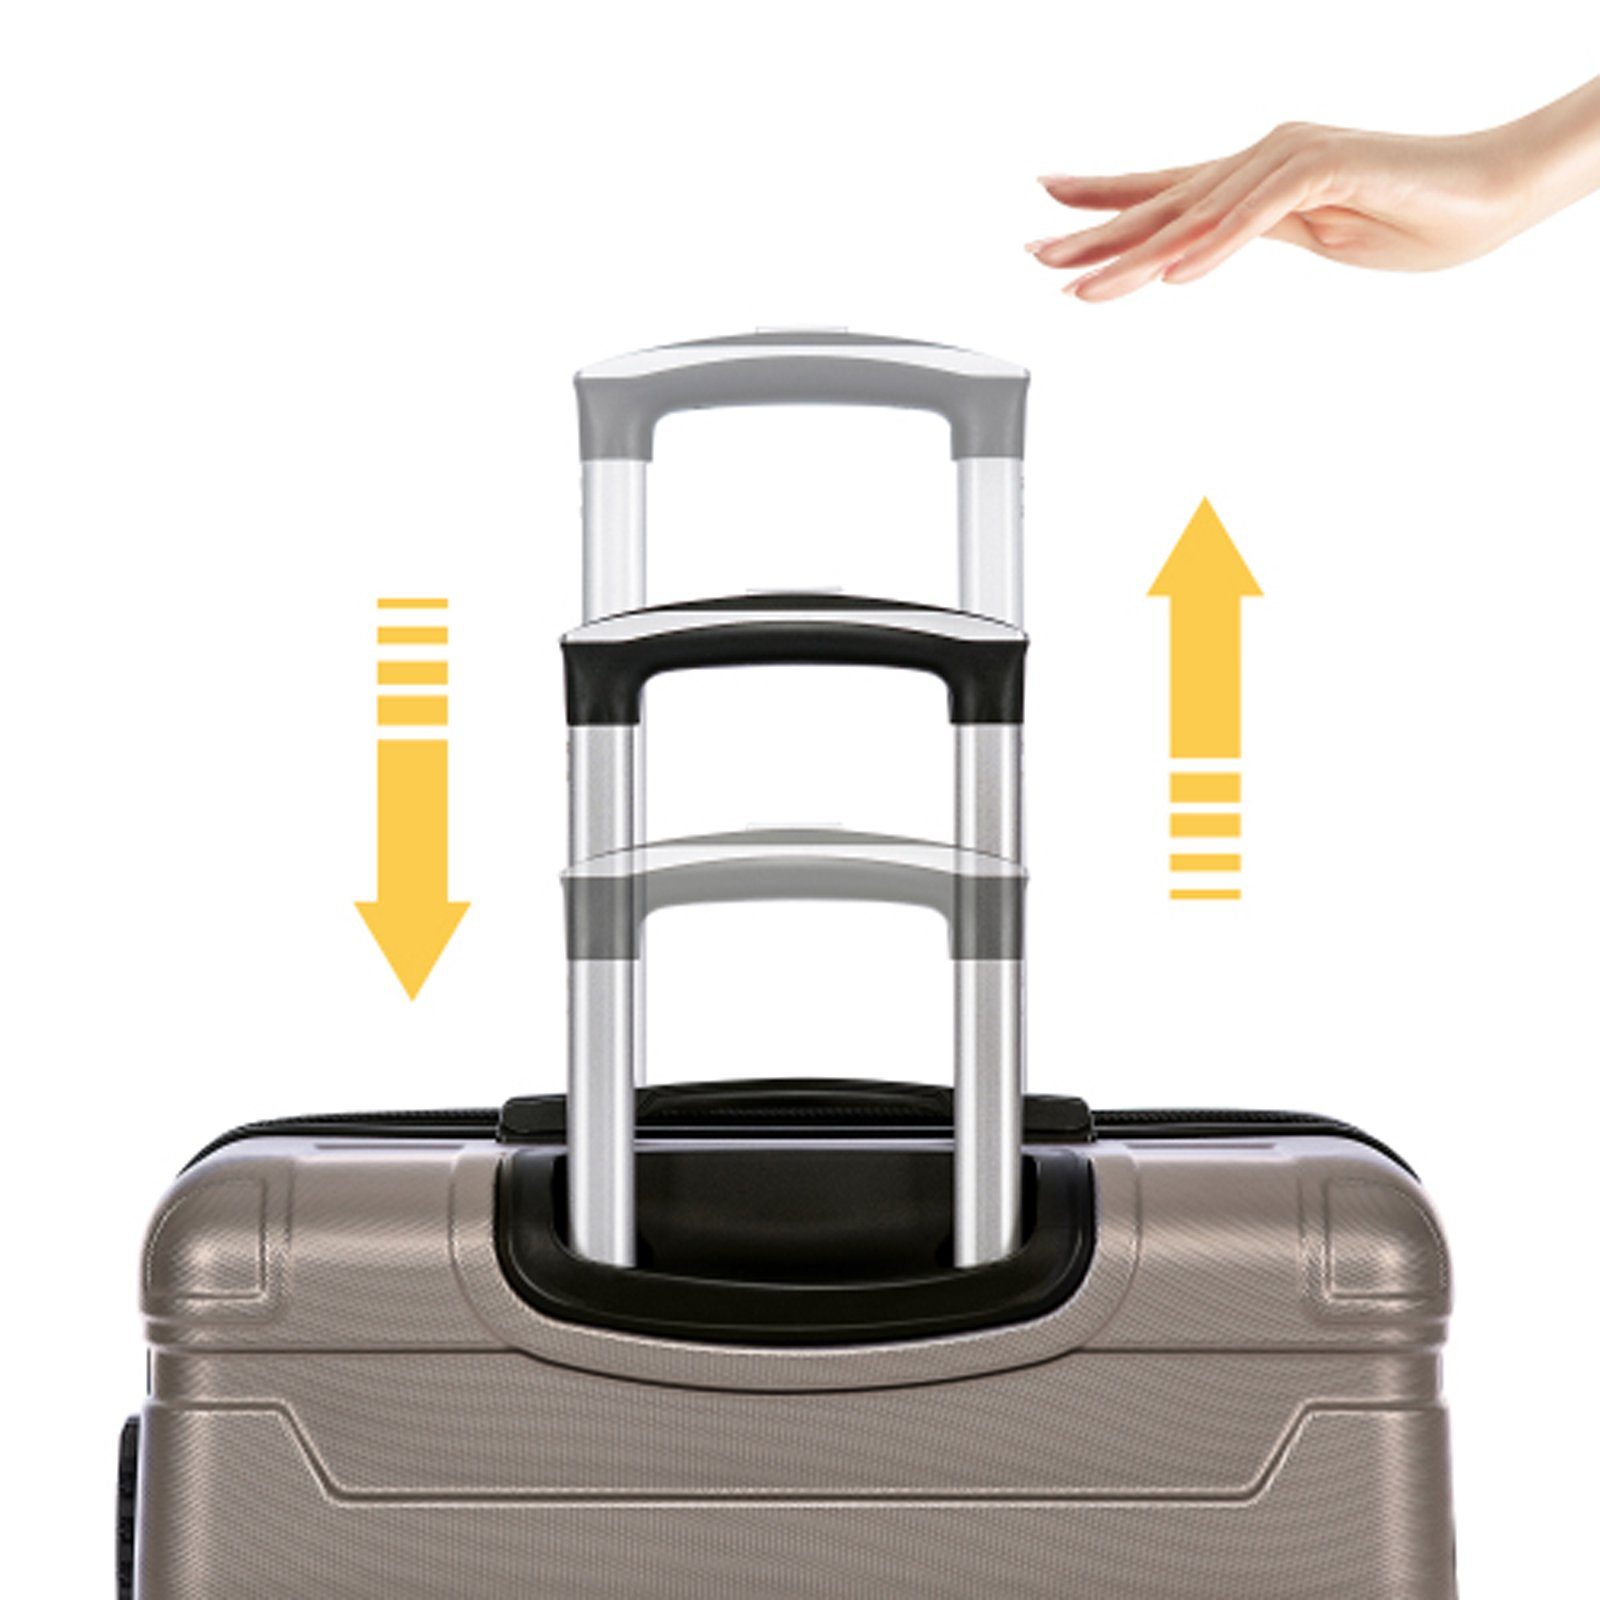 SEEZSSA Business-Koffer Hartschalen-Handgepäck Trolleys mit TSA-Schloss Gold